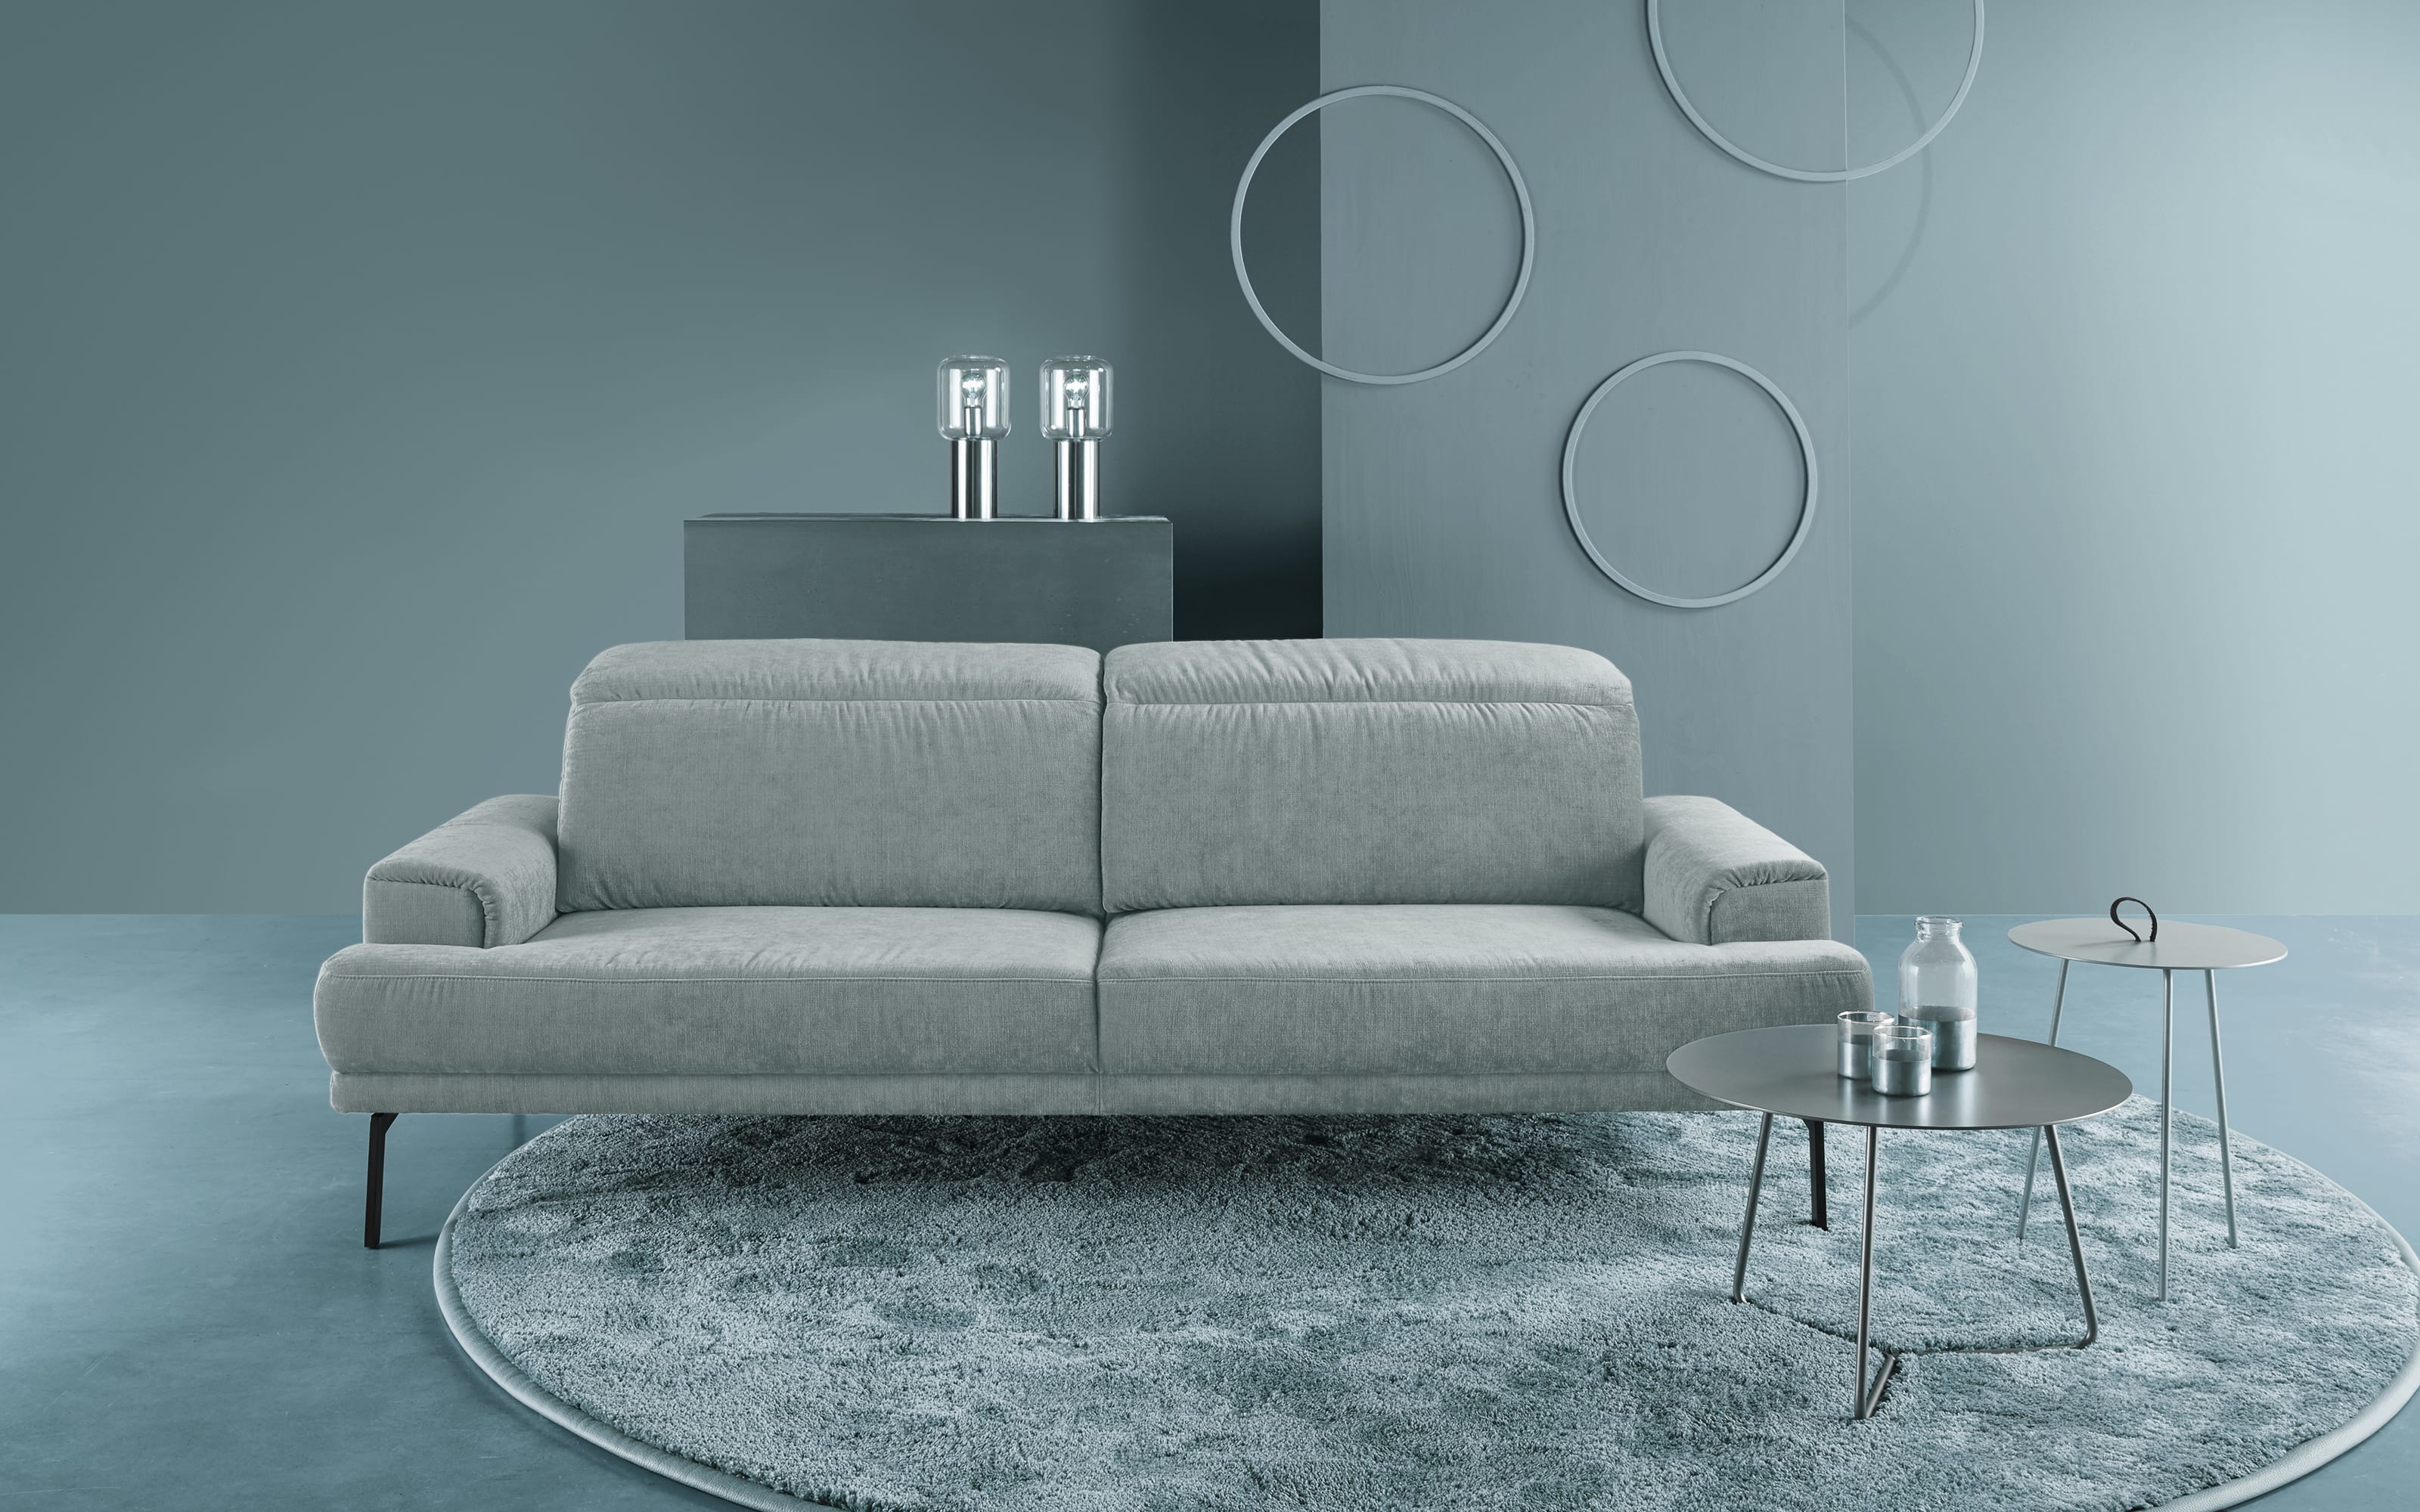 Sofa MR 4580, aqua, inkl. Funktionen